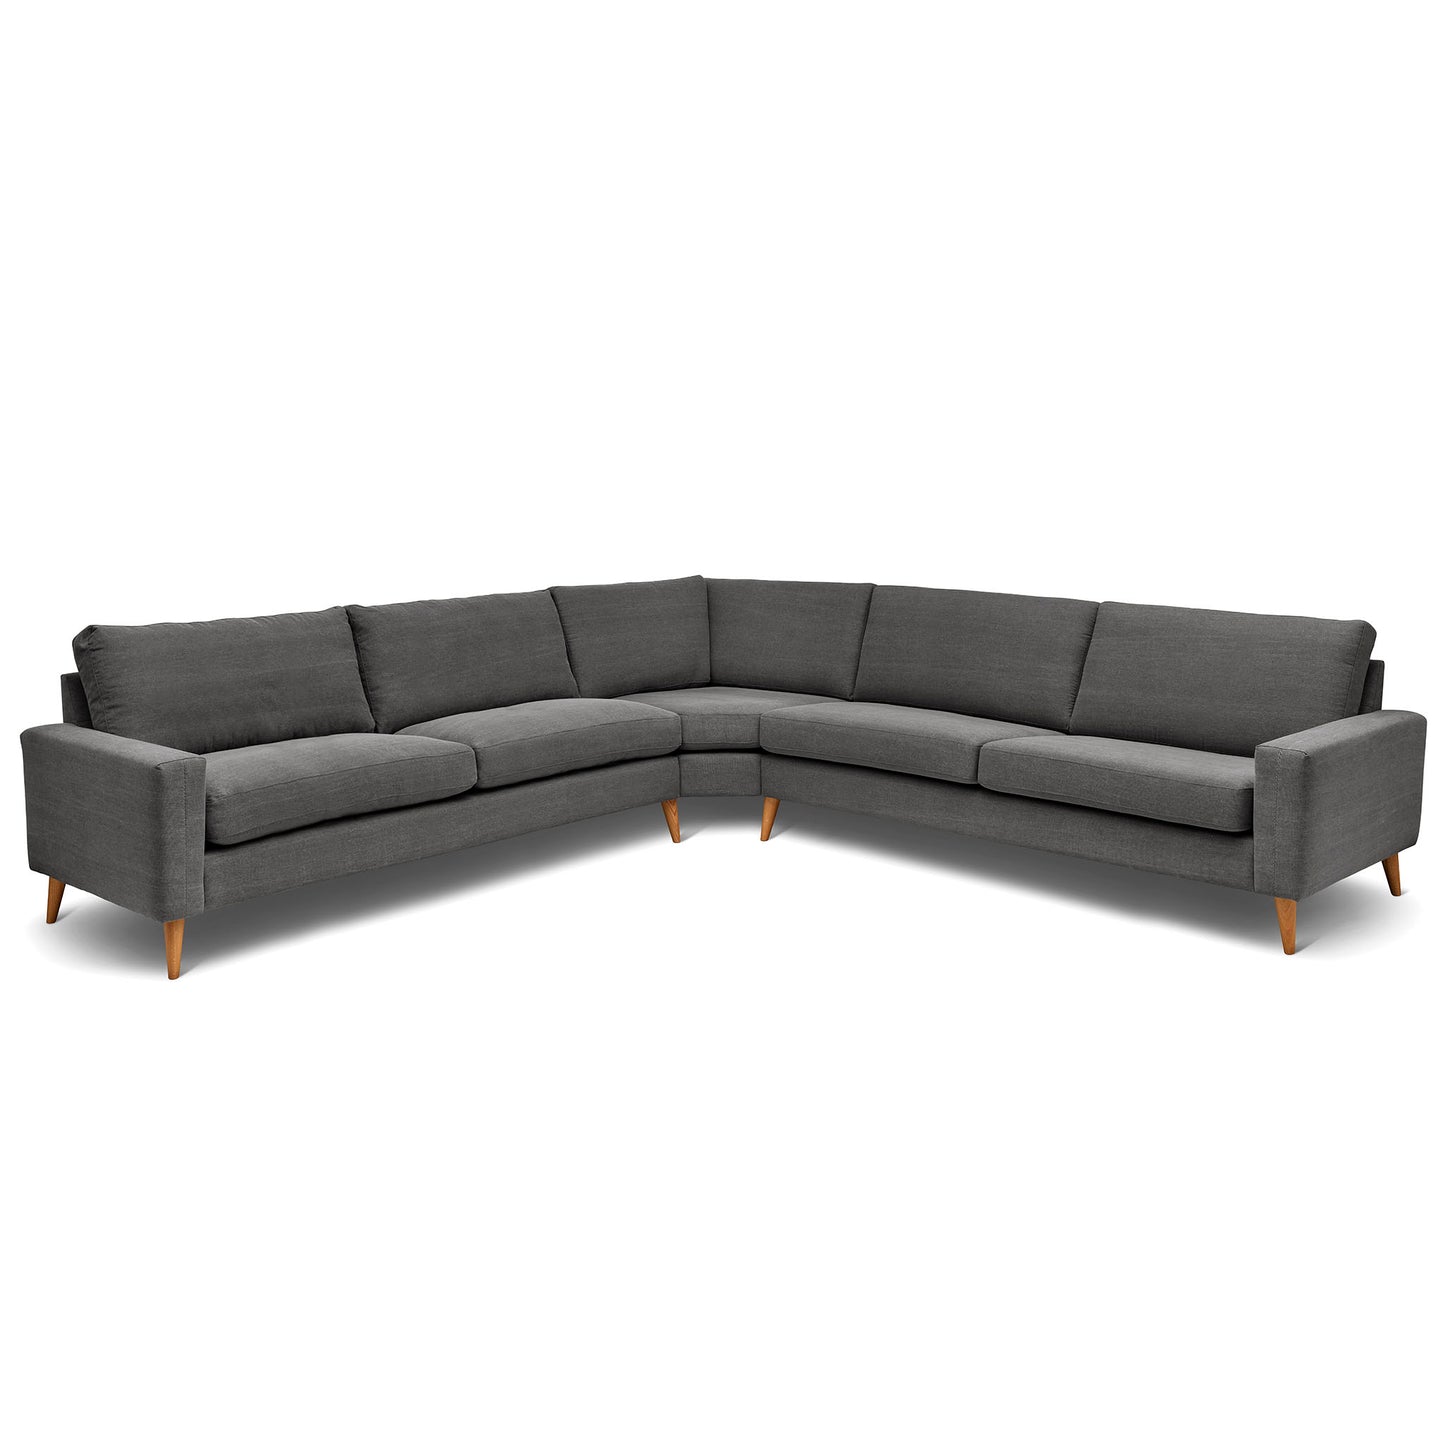 Stor kvadratisk hörnsoffa med måttet 321x321 cm. Sittvänlig soffa för äldre i grått tyg